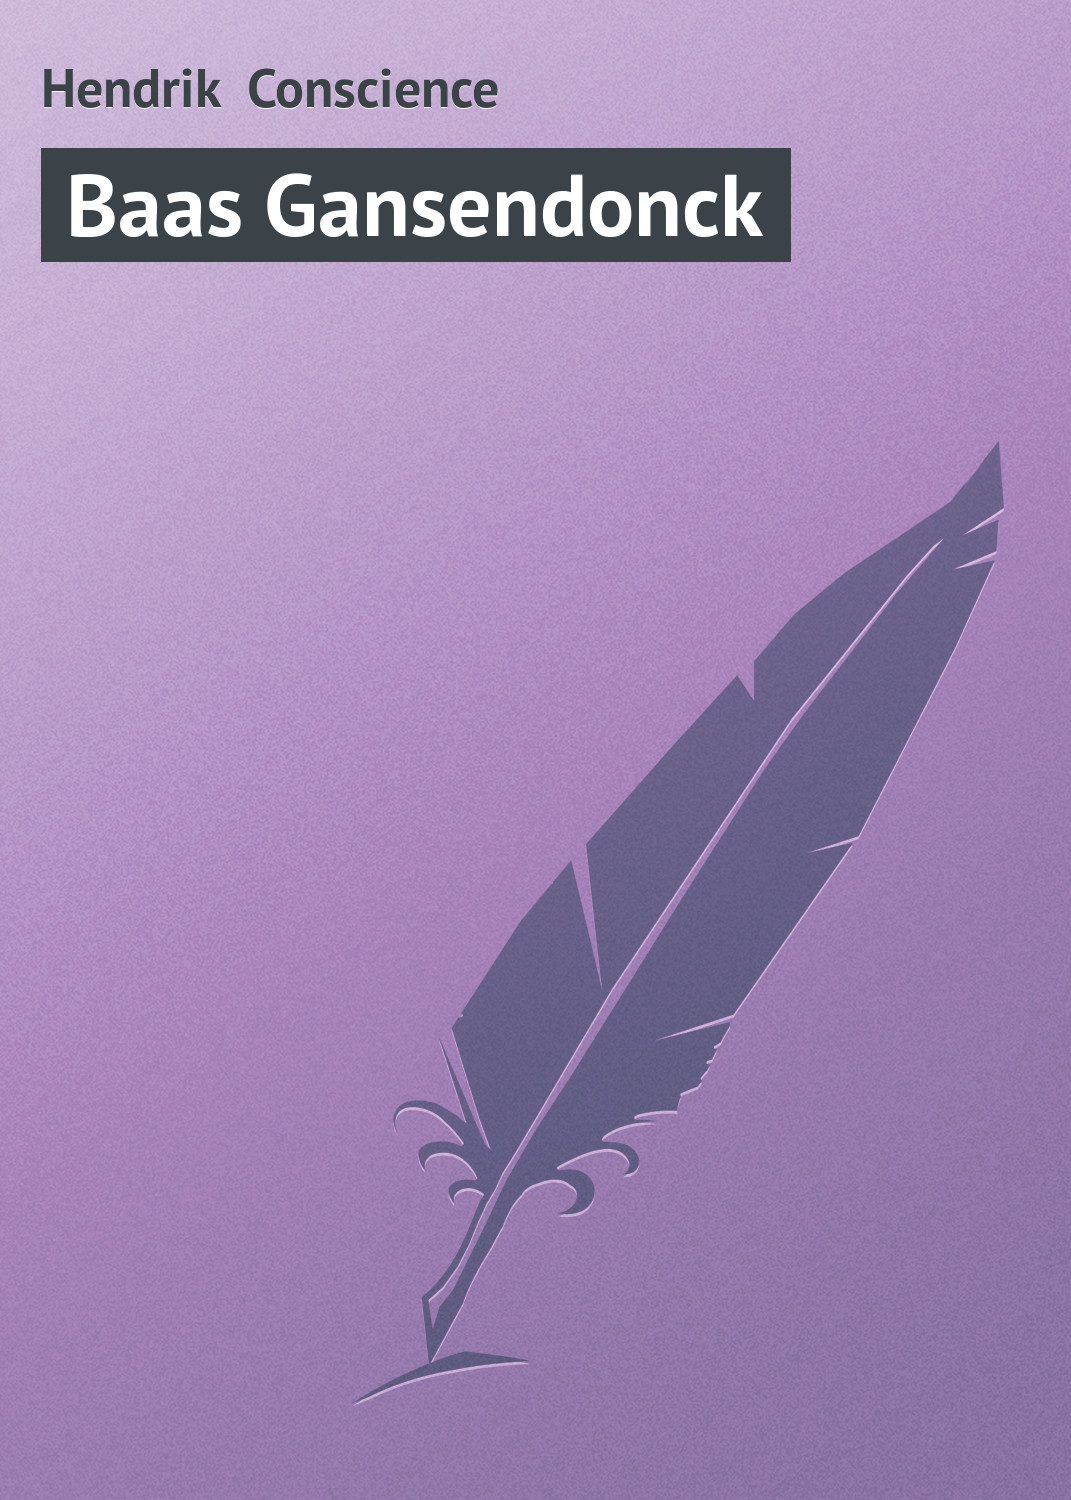 Книга Baas Gansendonck из серии , созданная Hendrik Conscience, может относится к жанру Зарубежная классика, Зарубежная старинная литература. Стоимость электронной книги Baas Gansendonck с идентификатором 21096894 составляет 5.99 руб.